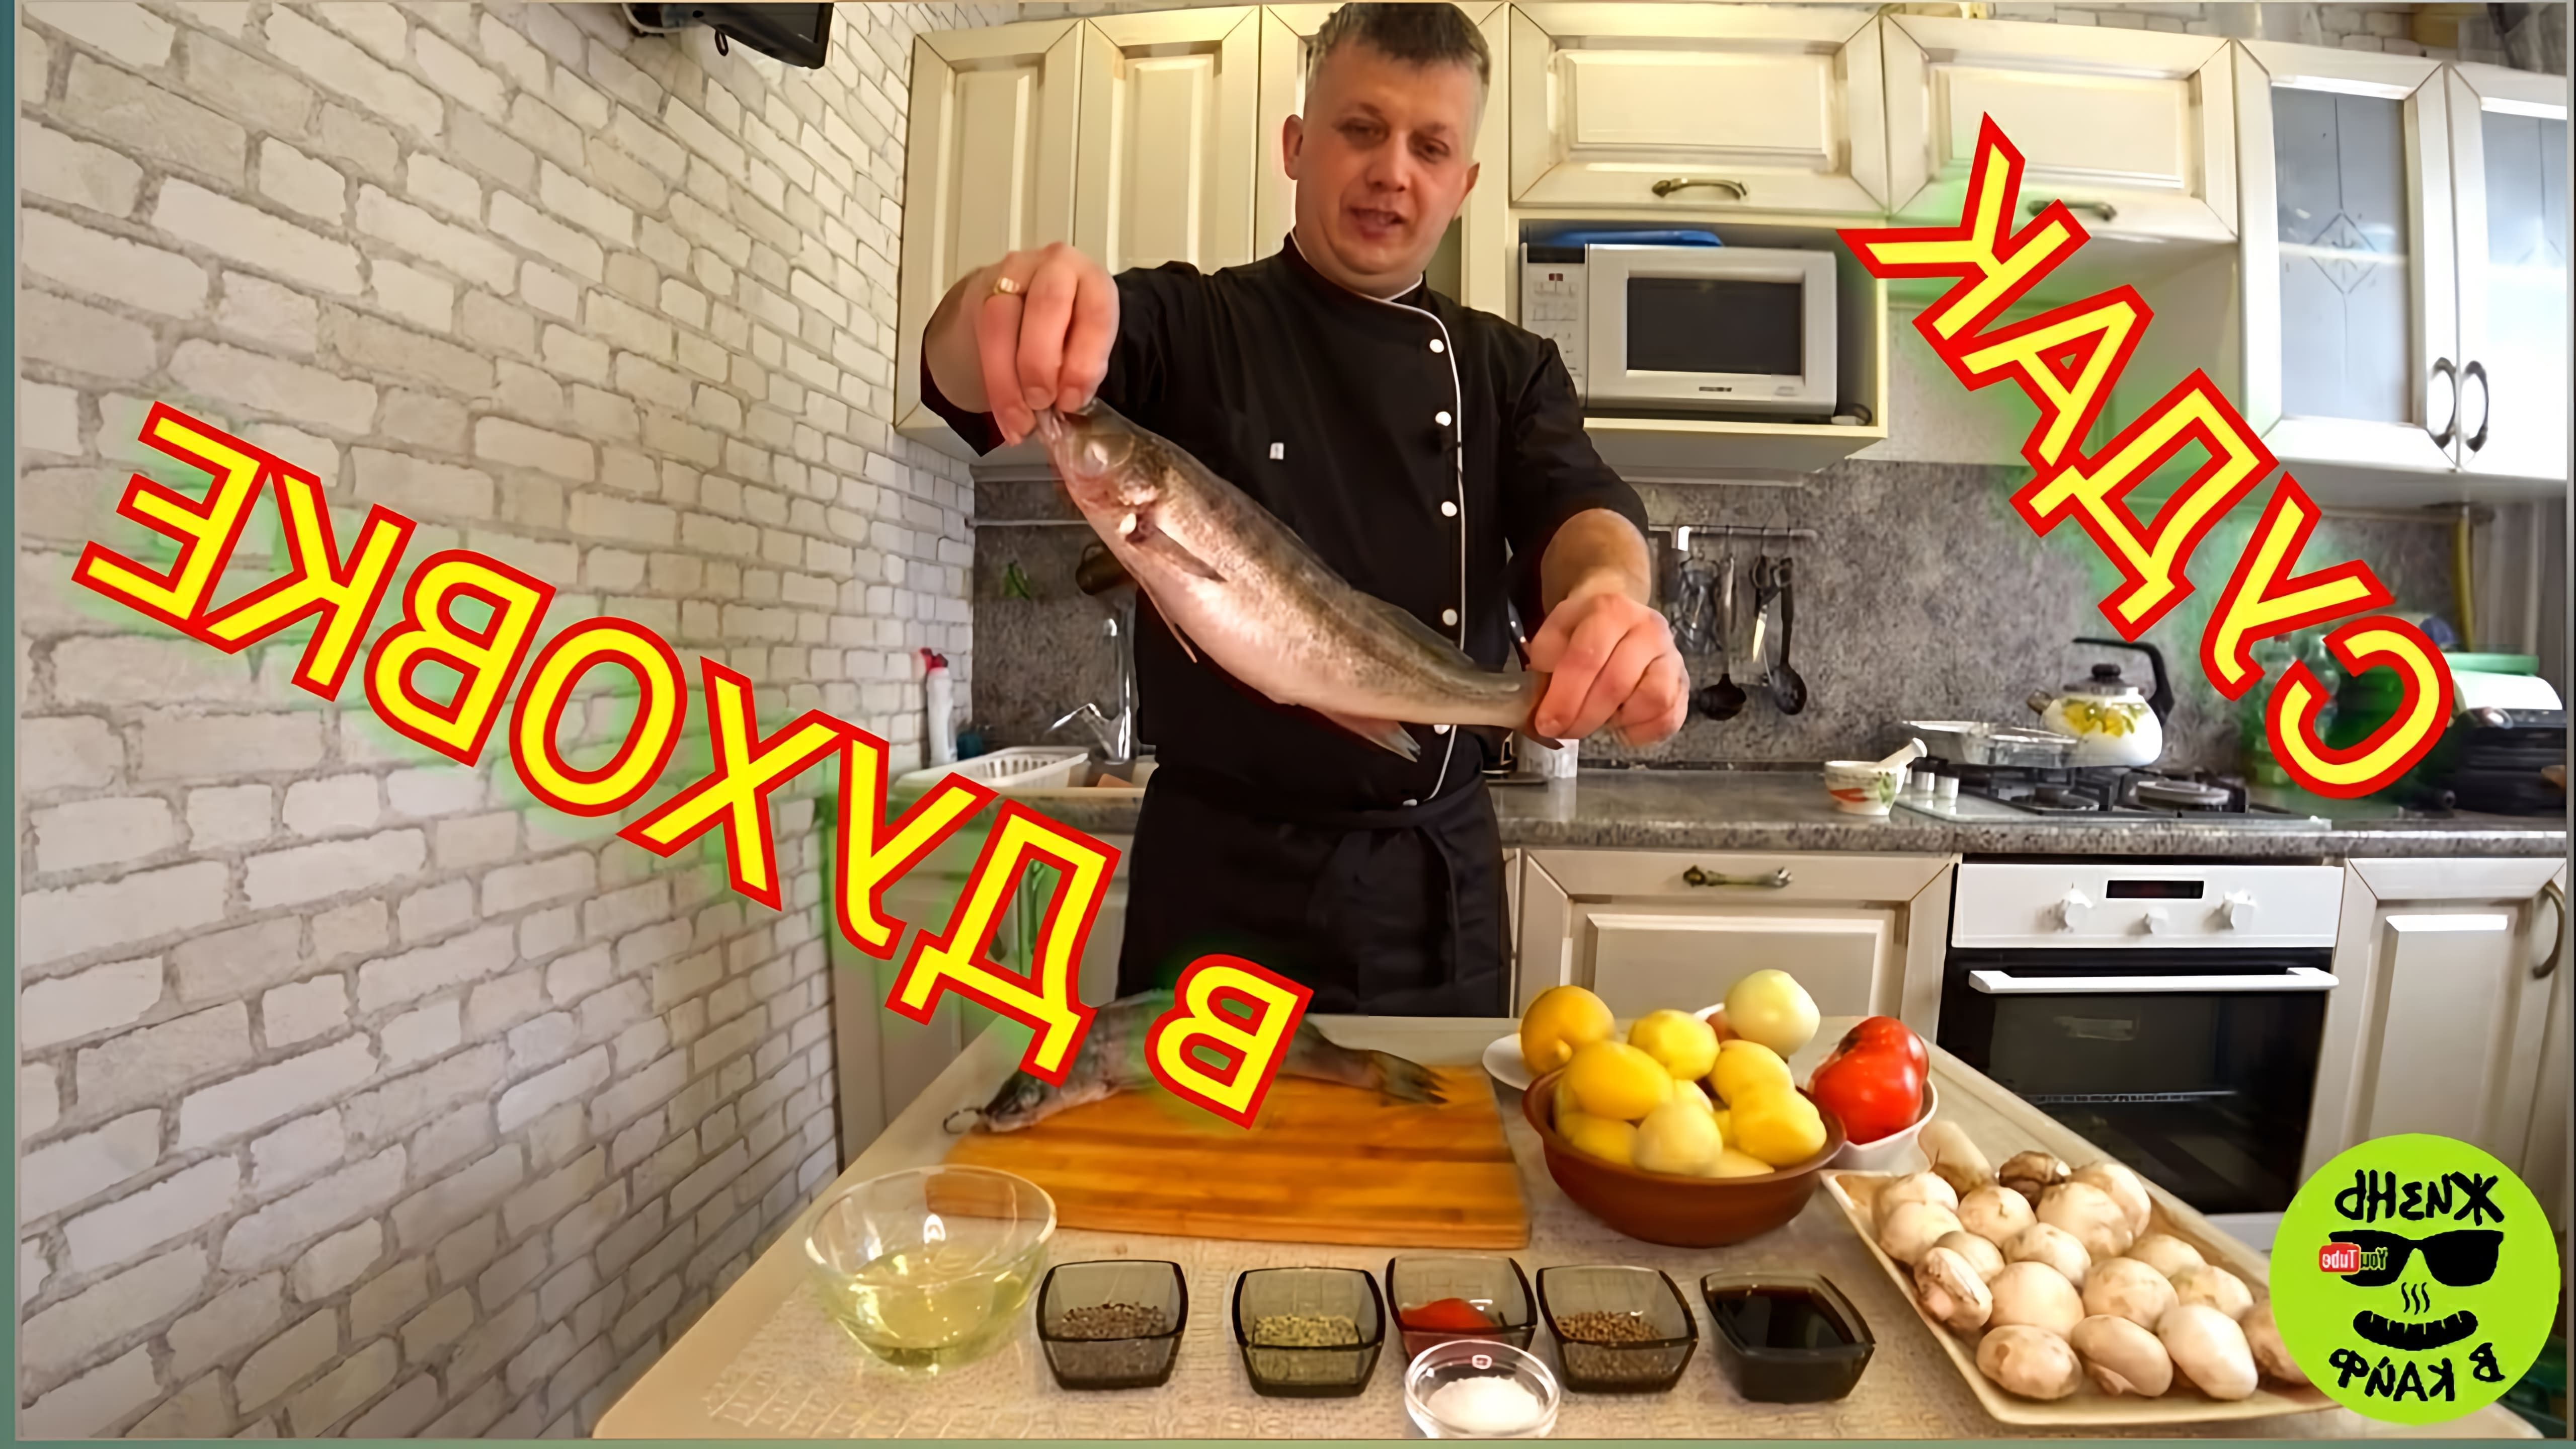 В данном видео демонстрируется рецепт приготовления судака в духовке целиком